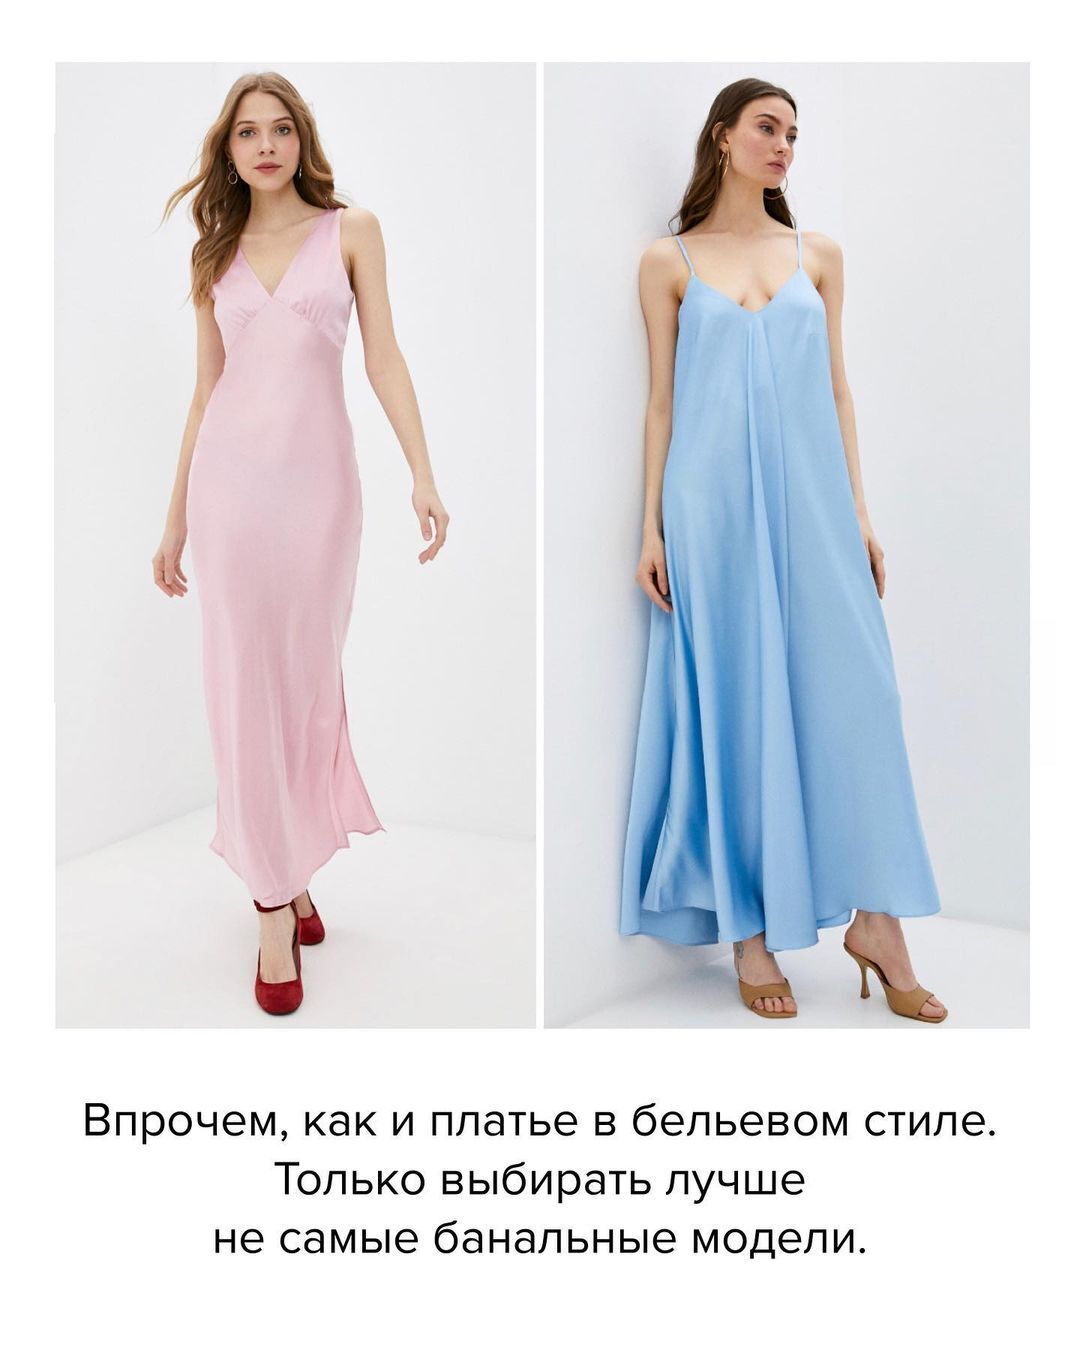 Модна вечірня сукня в білизняному стилі 2021